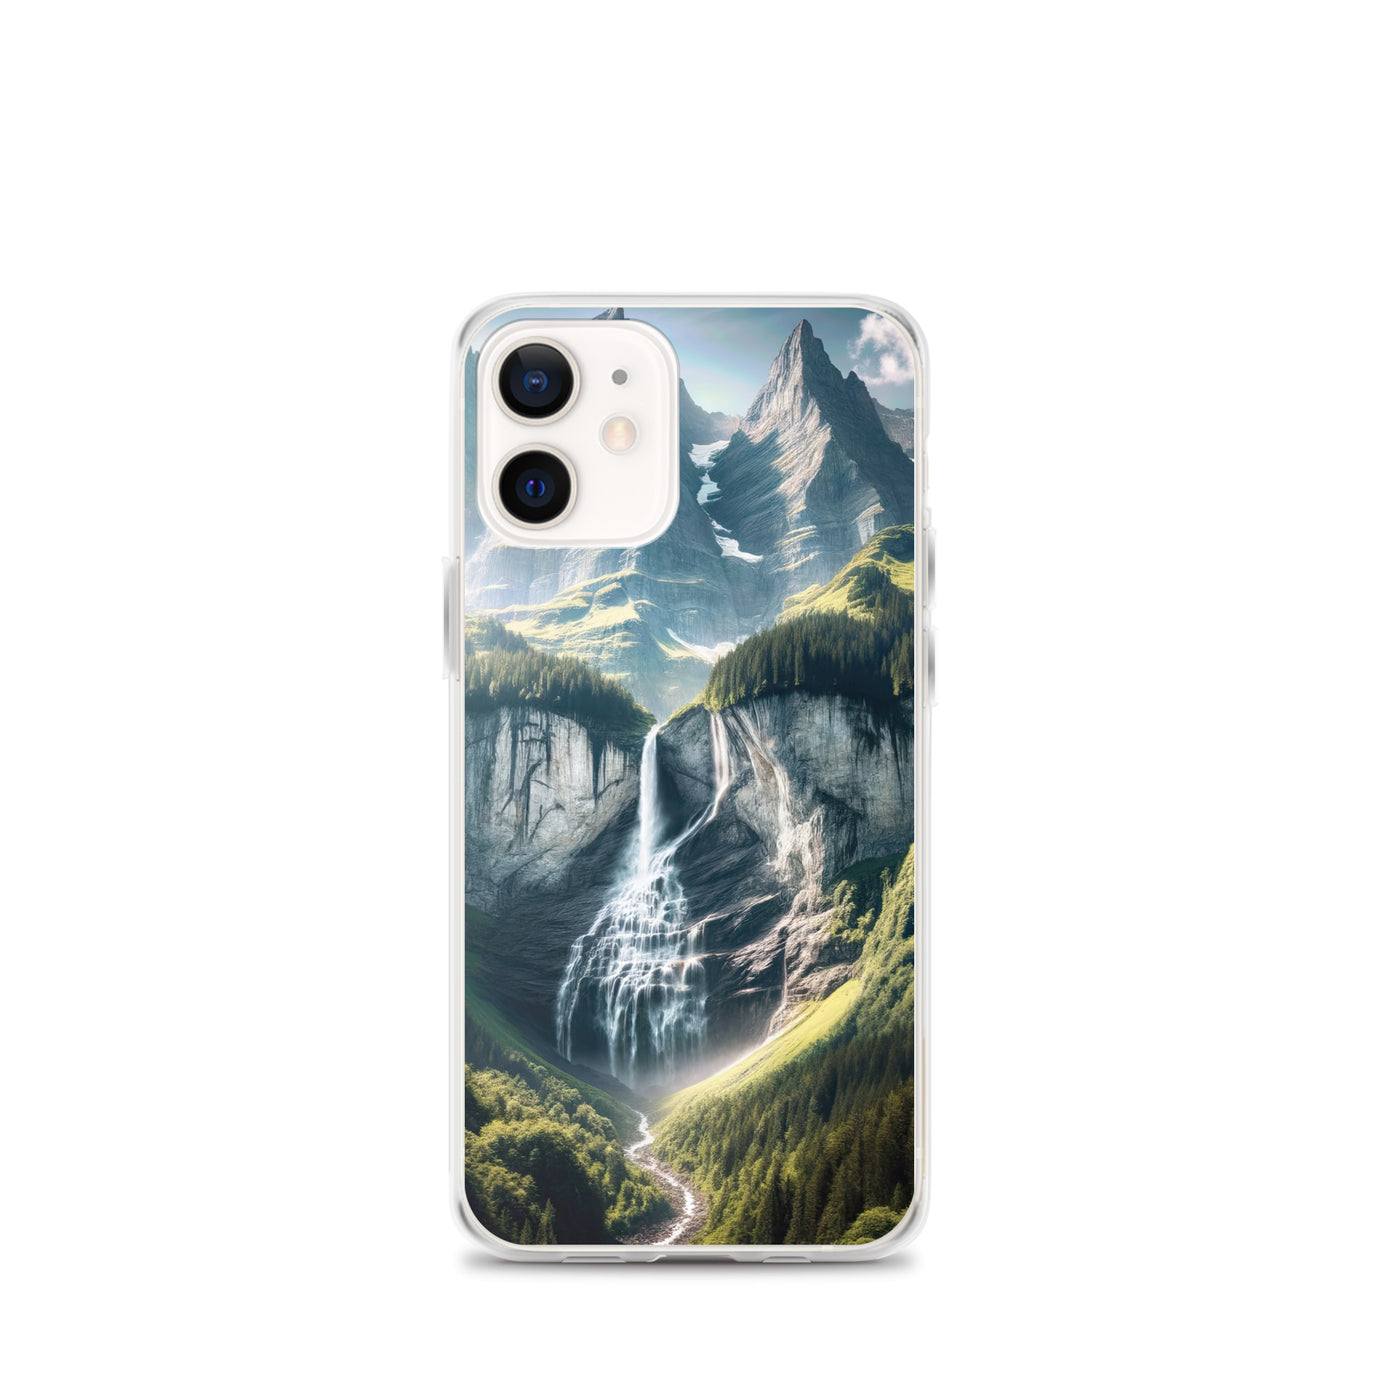 Foto der sommerlichen Alpen mit üppigen Gipfeln und Wasserfall - iPhone Schutzhülle (durchsichtig) berge xxx yyy zzz iPhone 12 mini